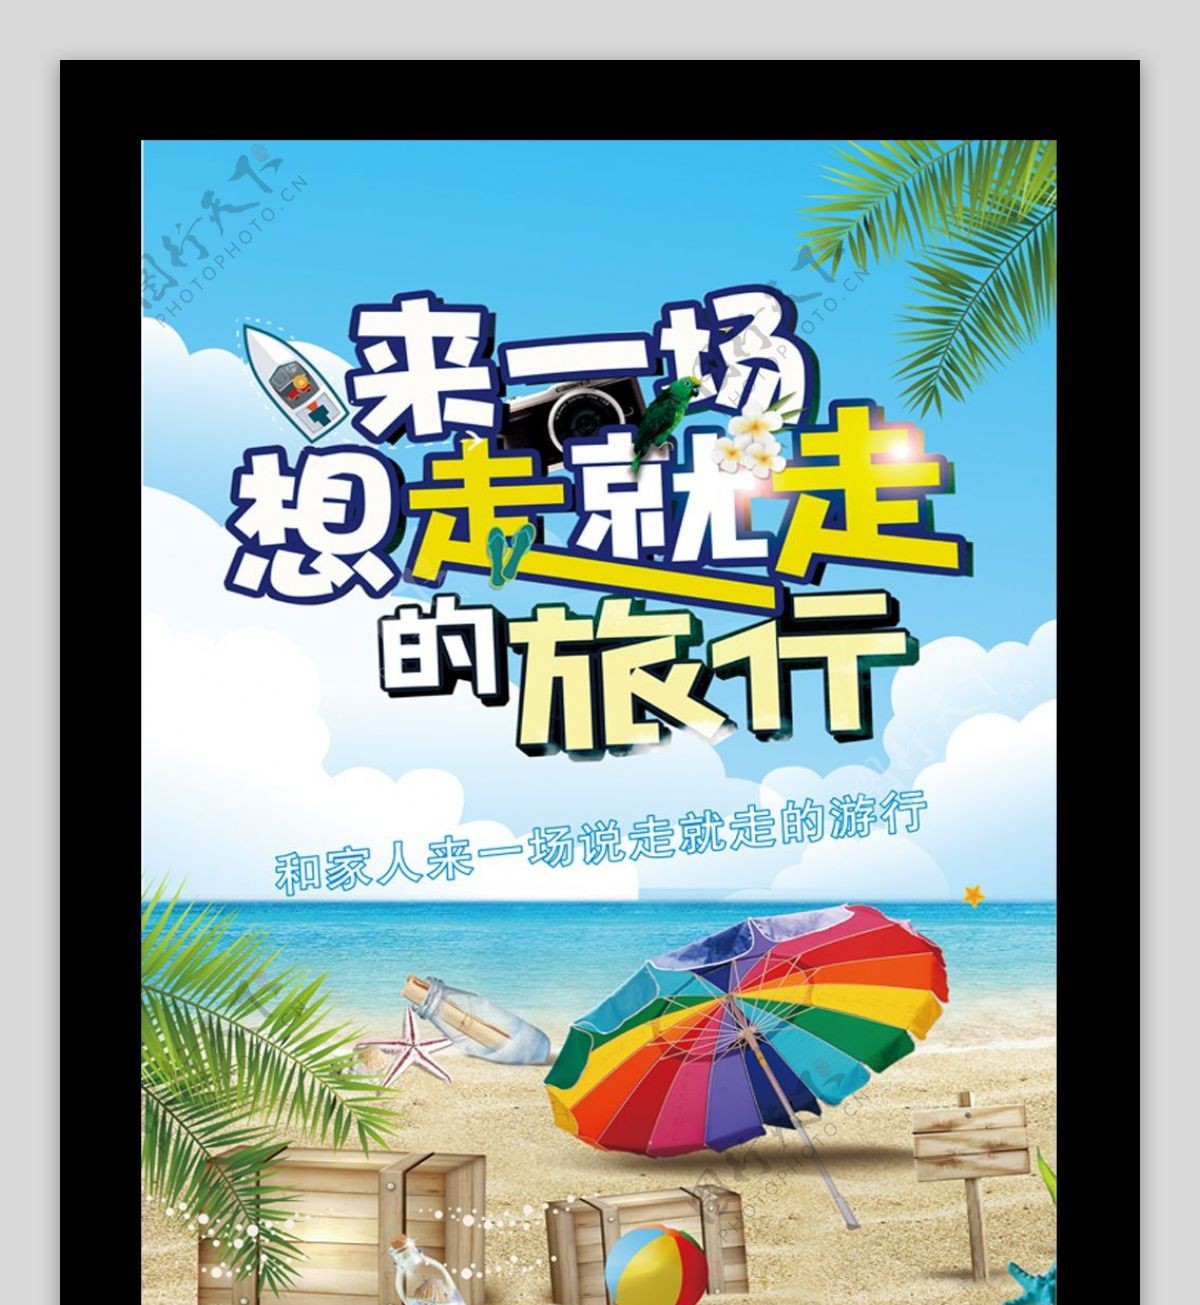 2017年小清新海边旅游海报设计